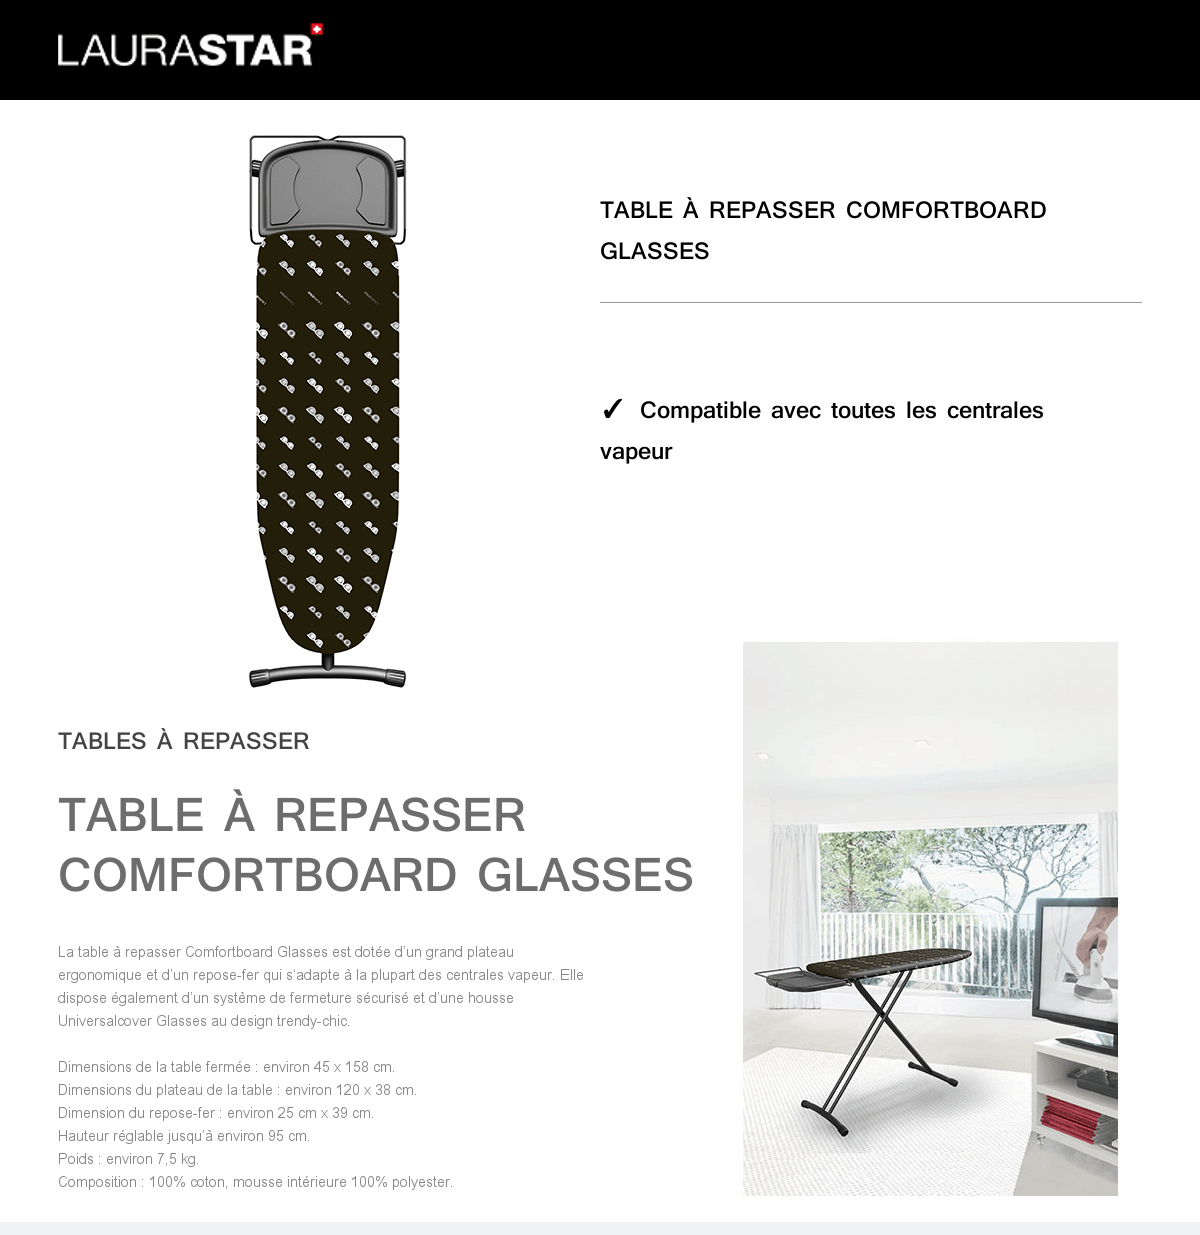 laurastar table a repasser comfortboard glasses